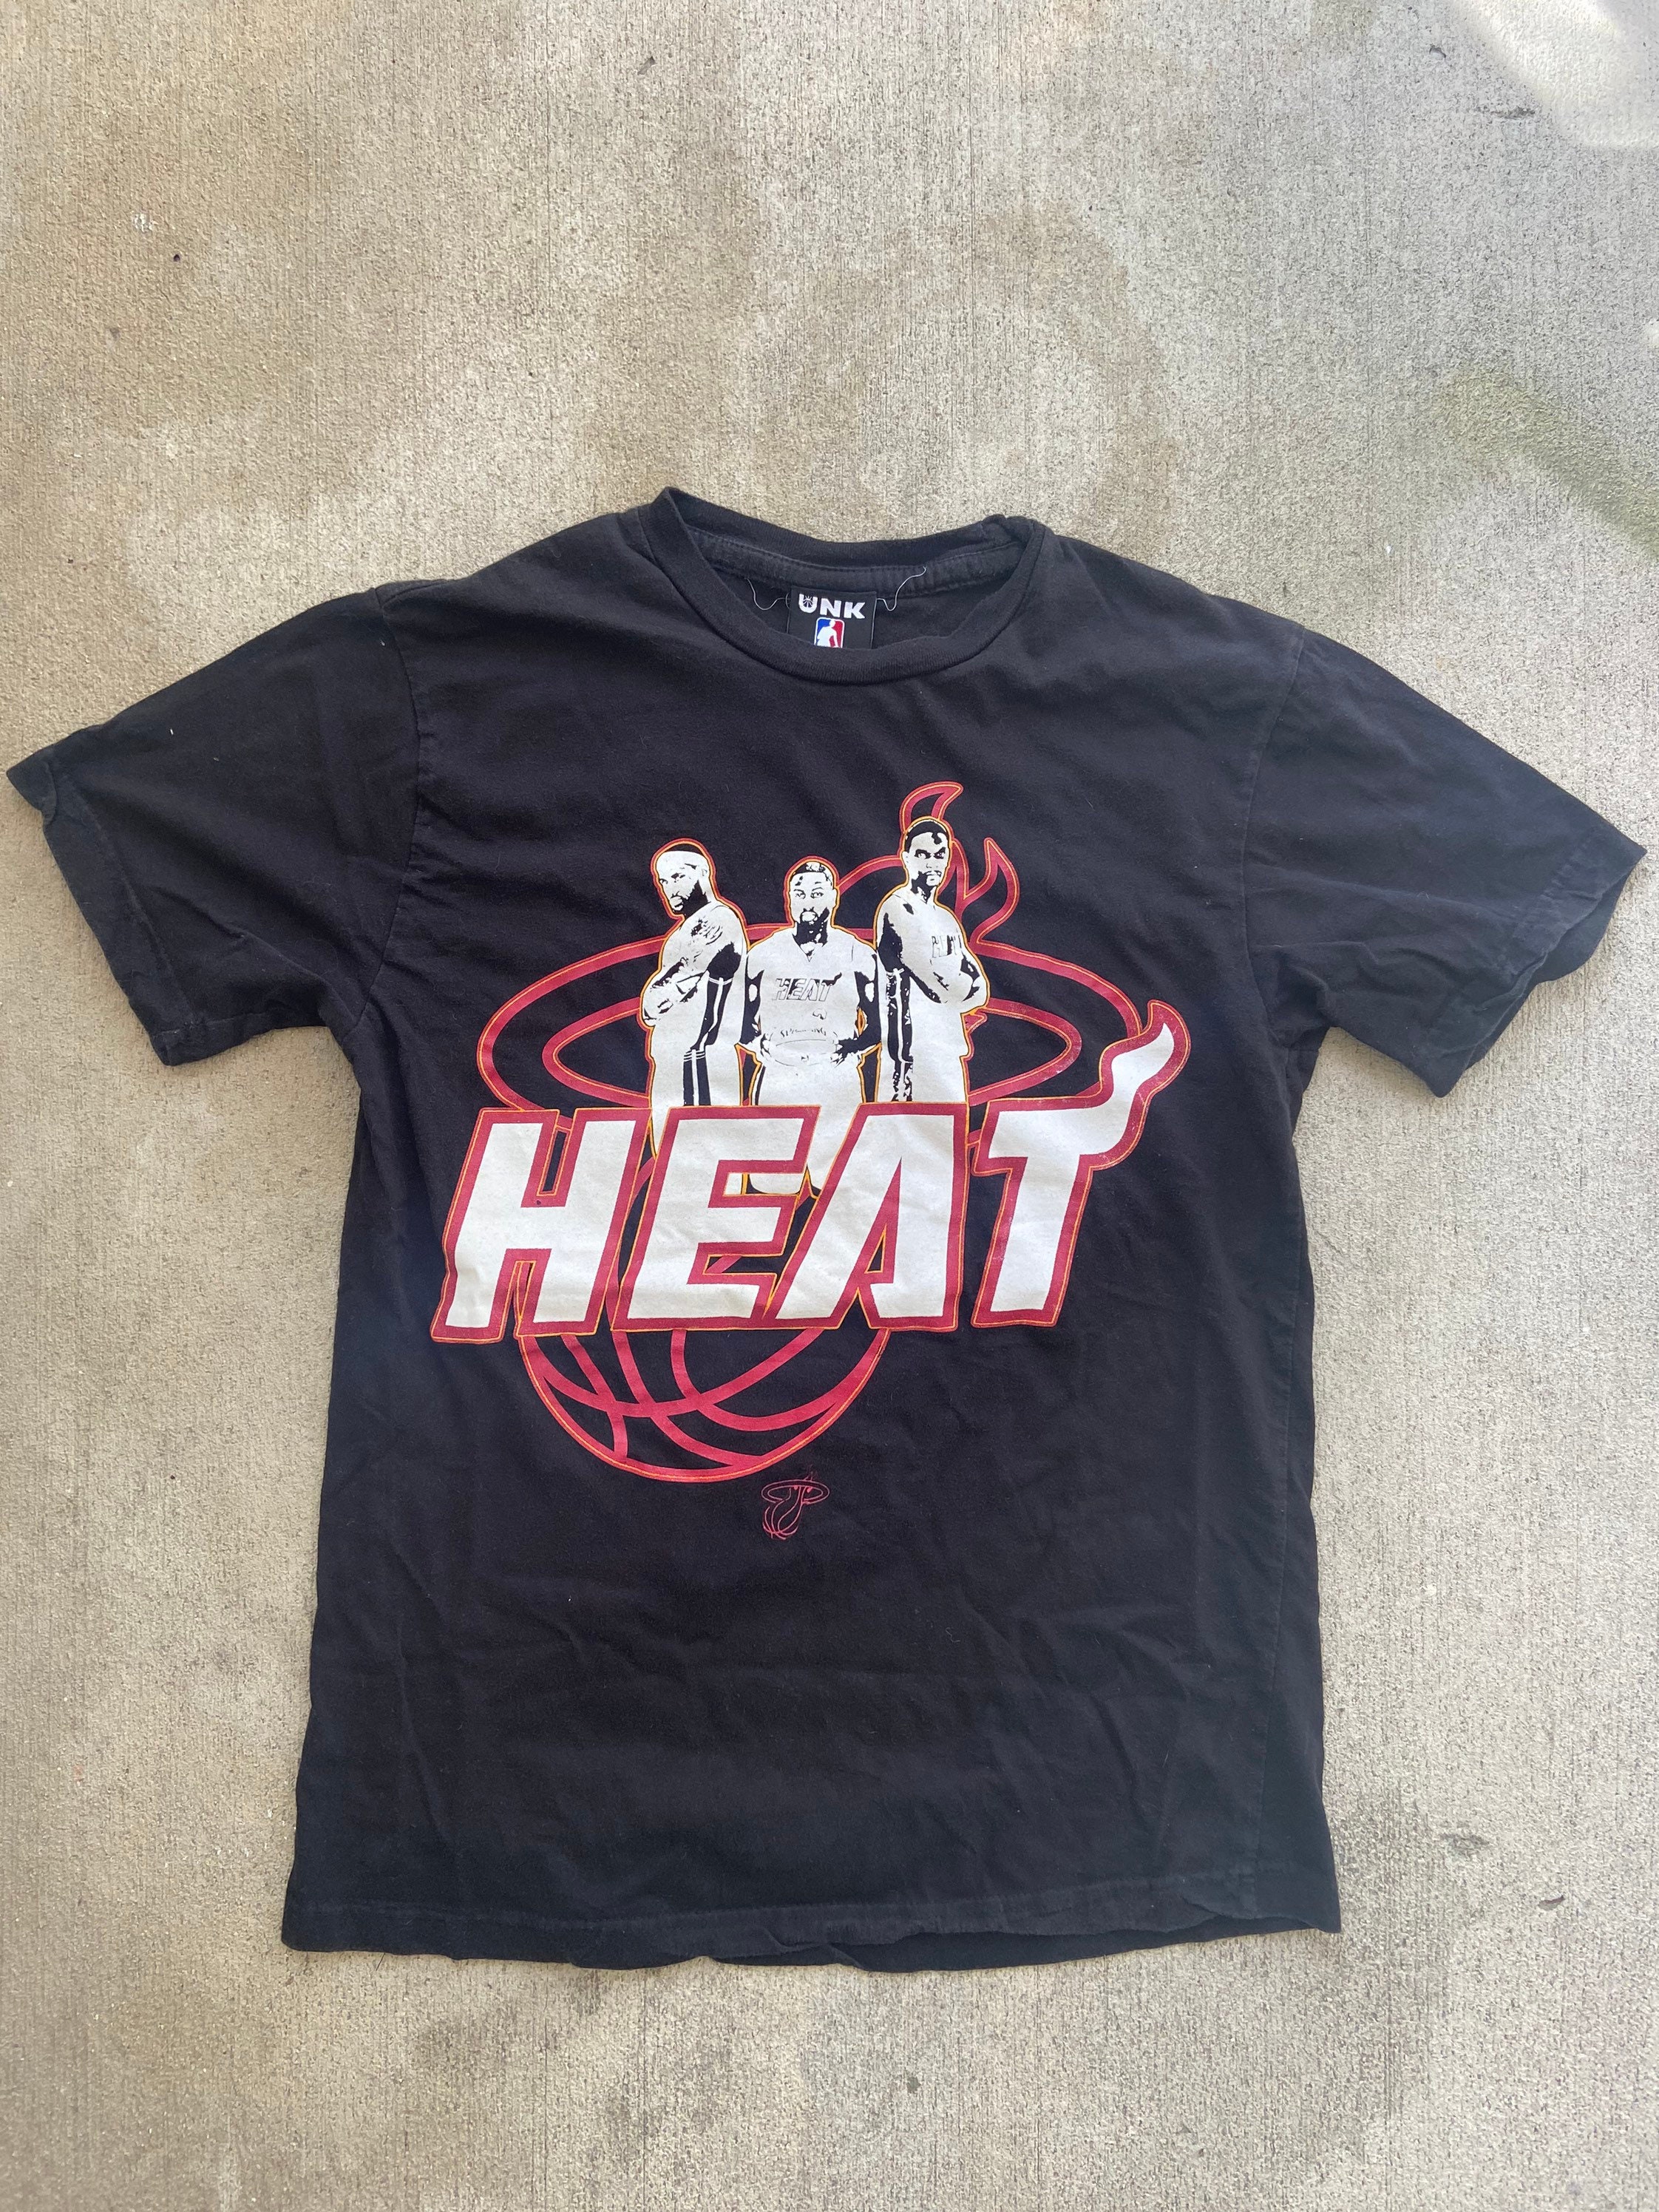 Miami Heat Shirt, Vintage Miami Florida Cityscape Retro Basketball 80's T- Shirt